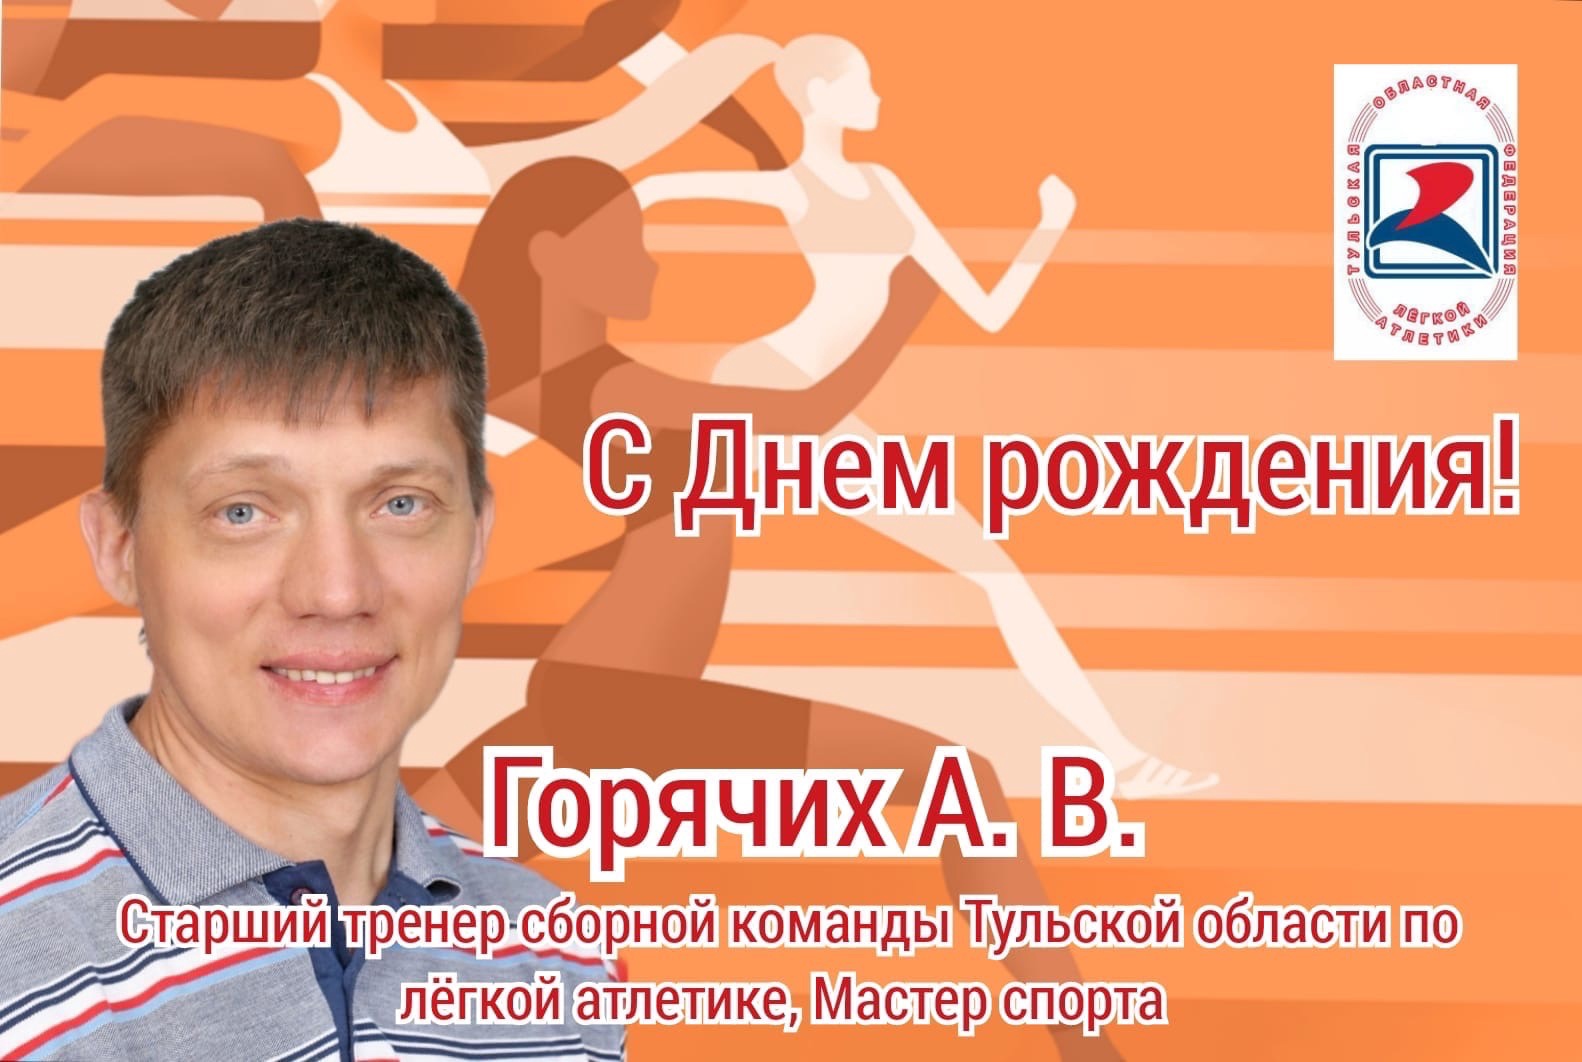 Поздравляем с днем рождения Валентину Ивановну Татчину!!!